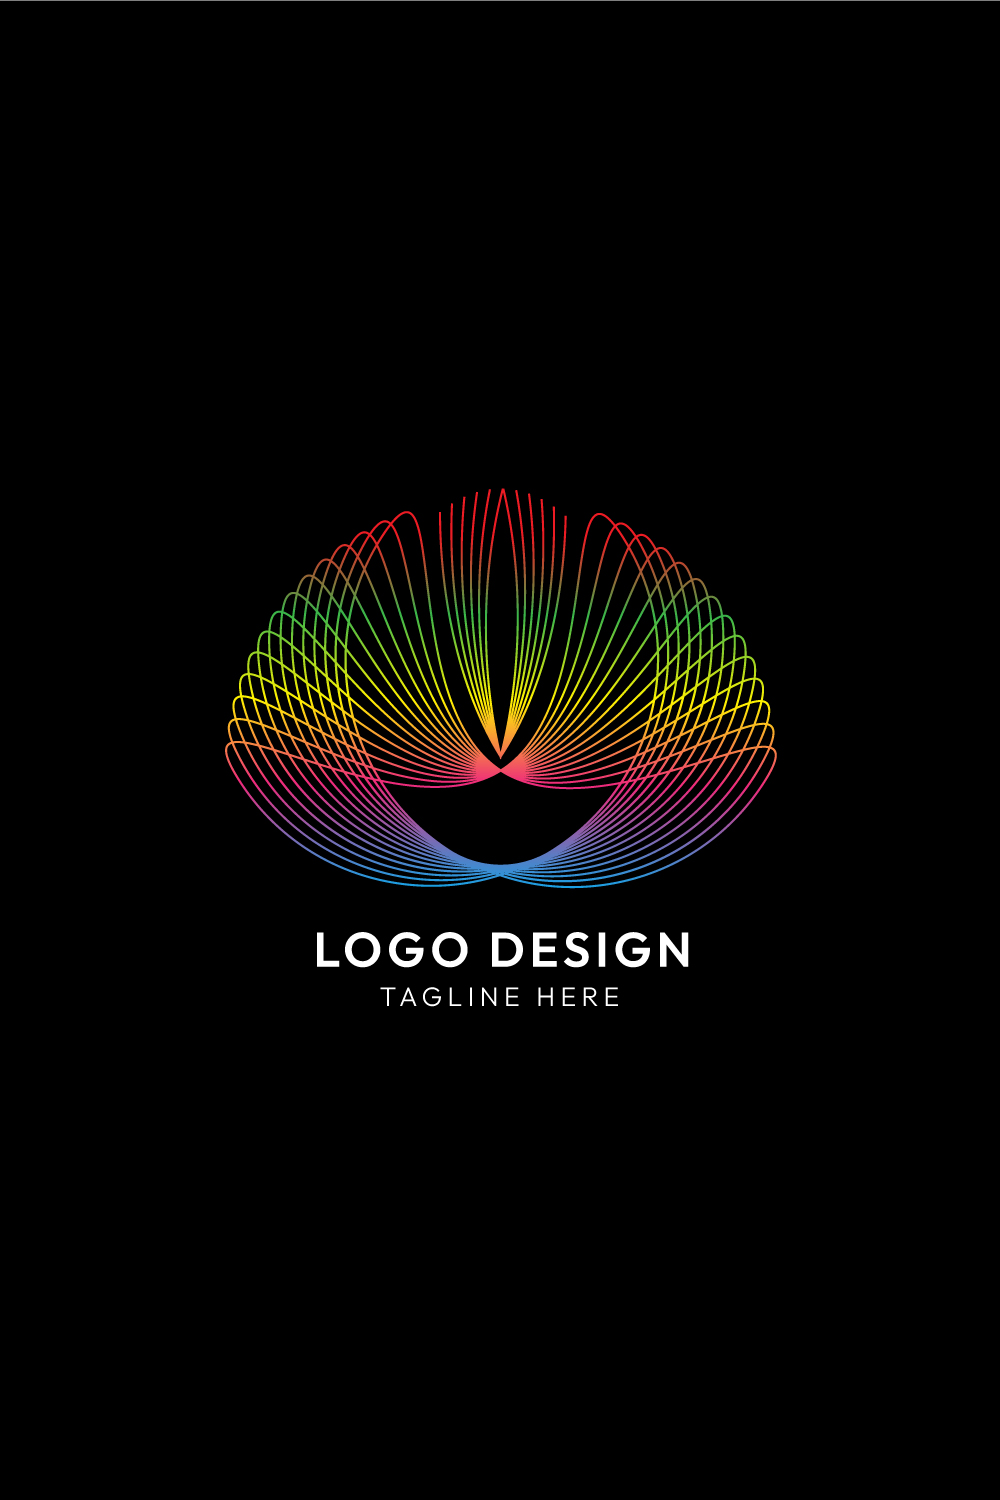 Line Art Nature & Beauty Logo Design Bundle pinterest preview image.